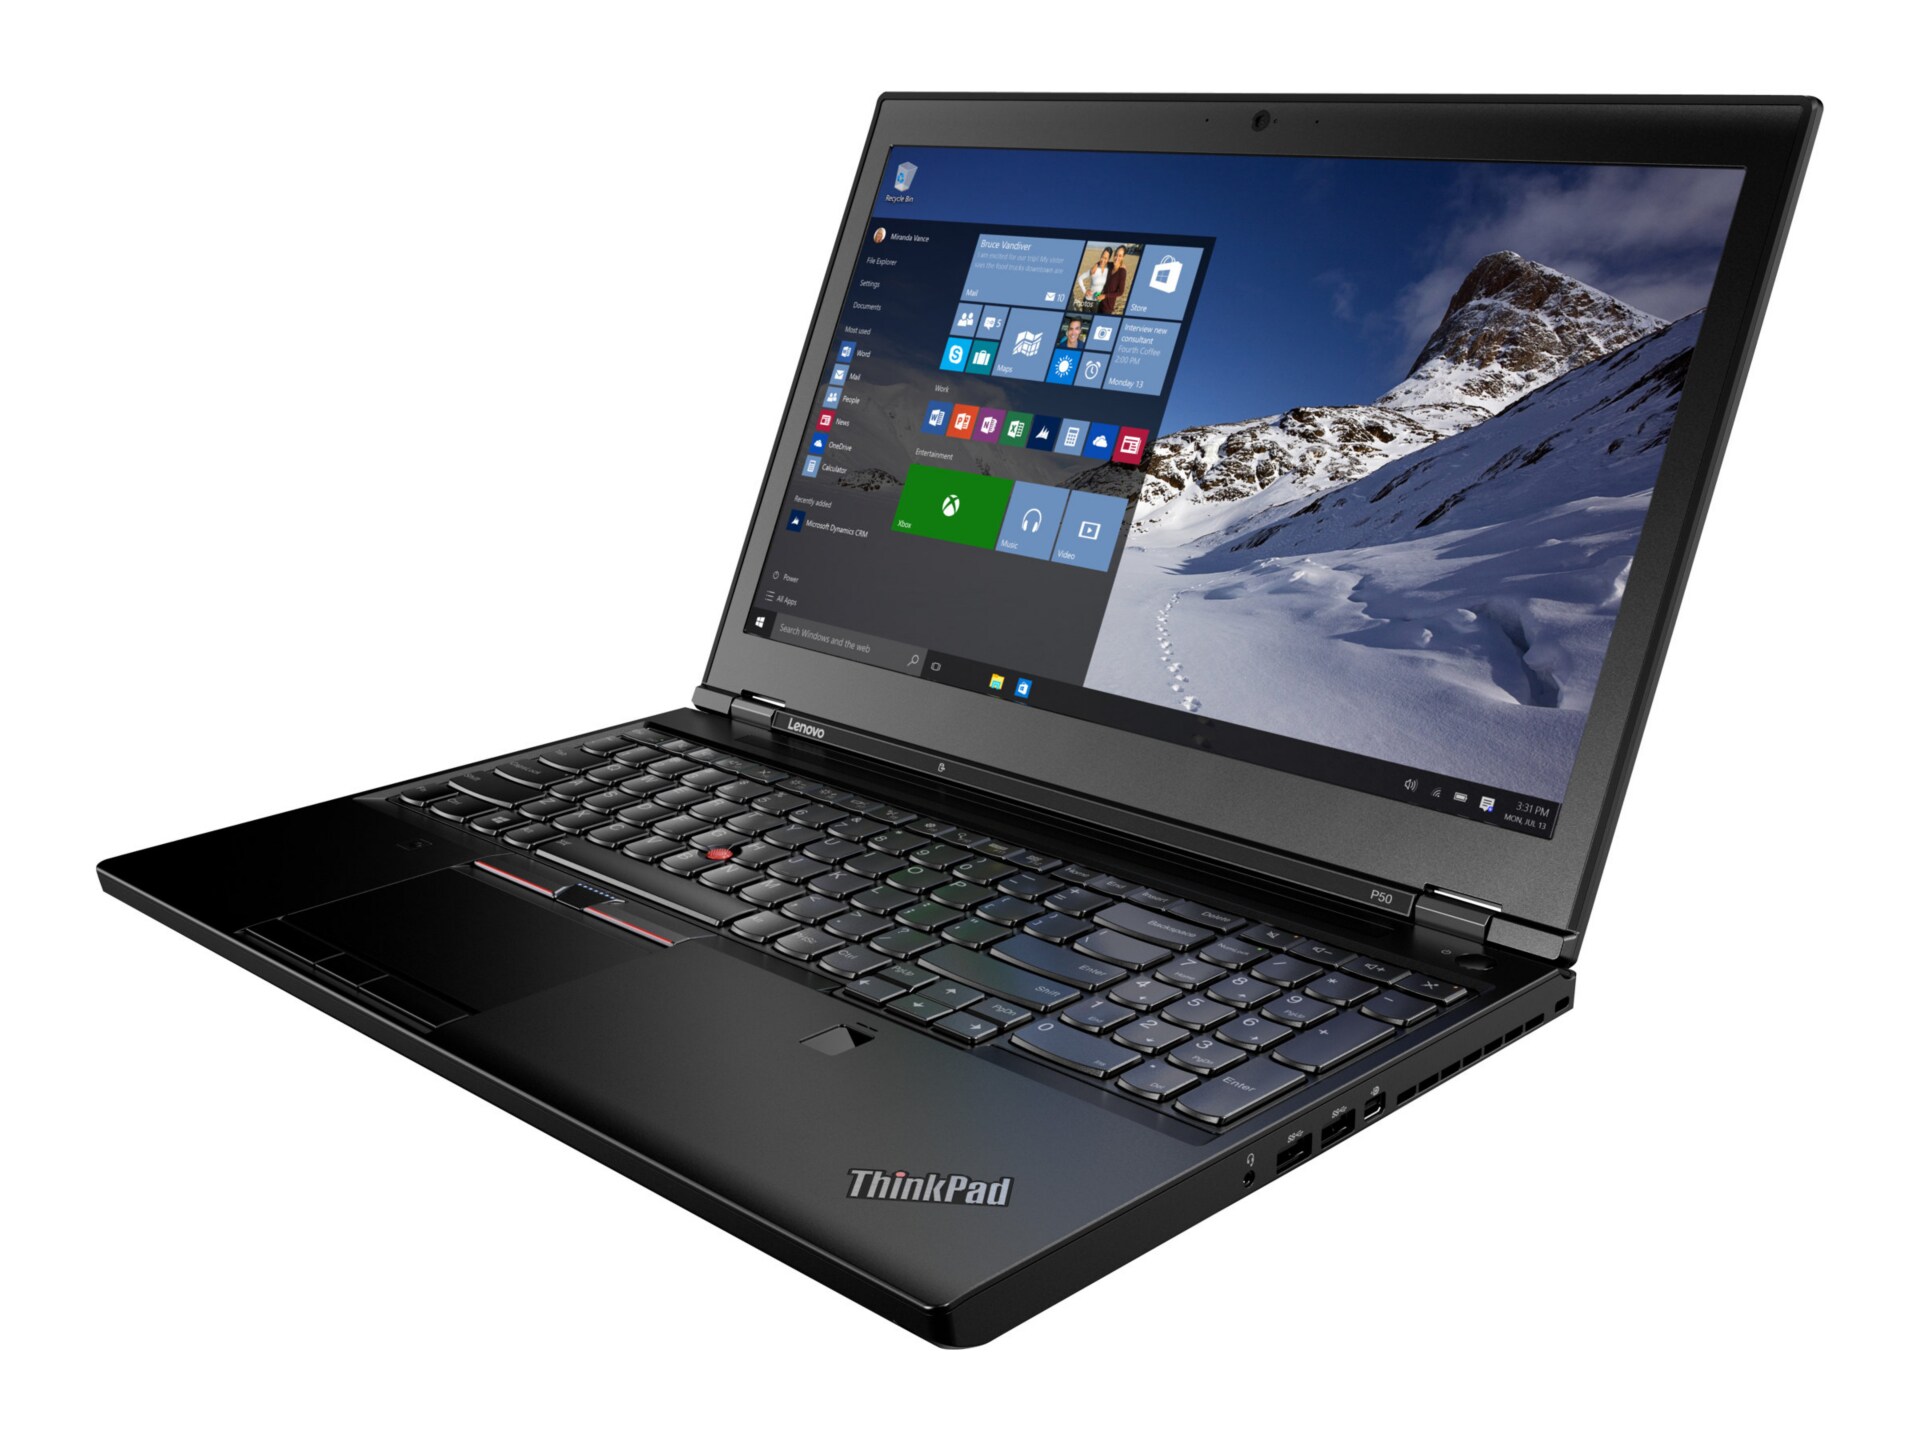 Lenovo ThinkPad P50 - 15.6" - Core i7 6700HQ - 8 GB RAM - 500 GB HDD